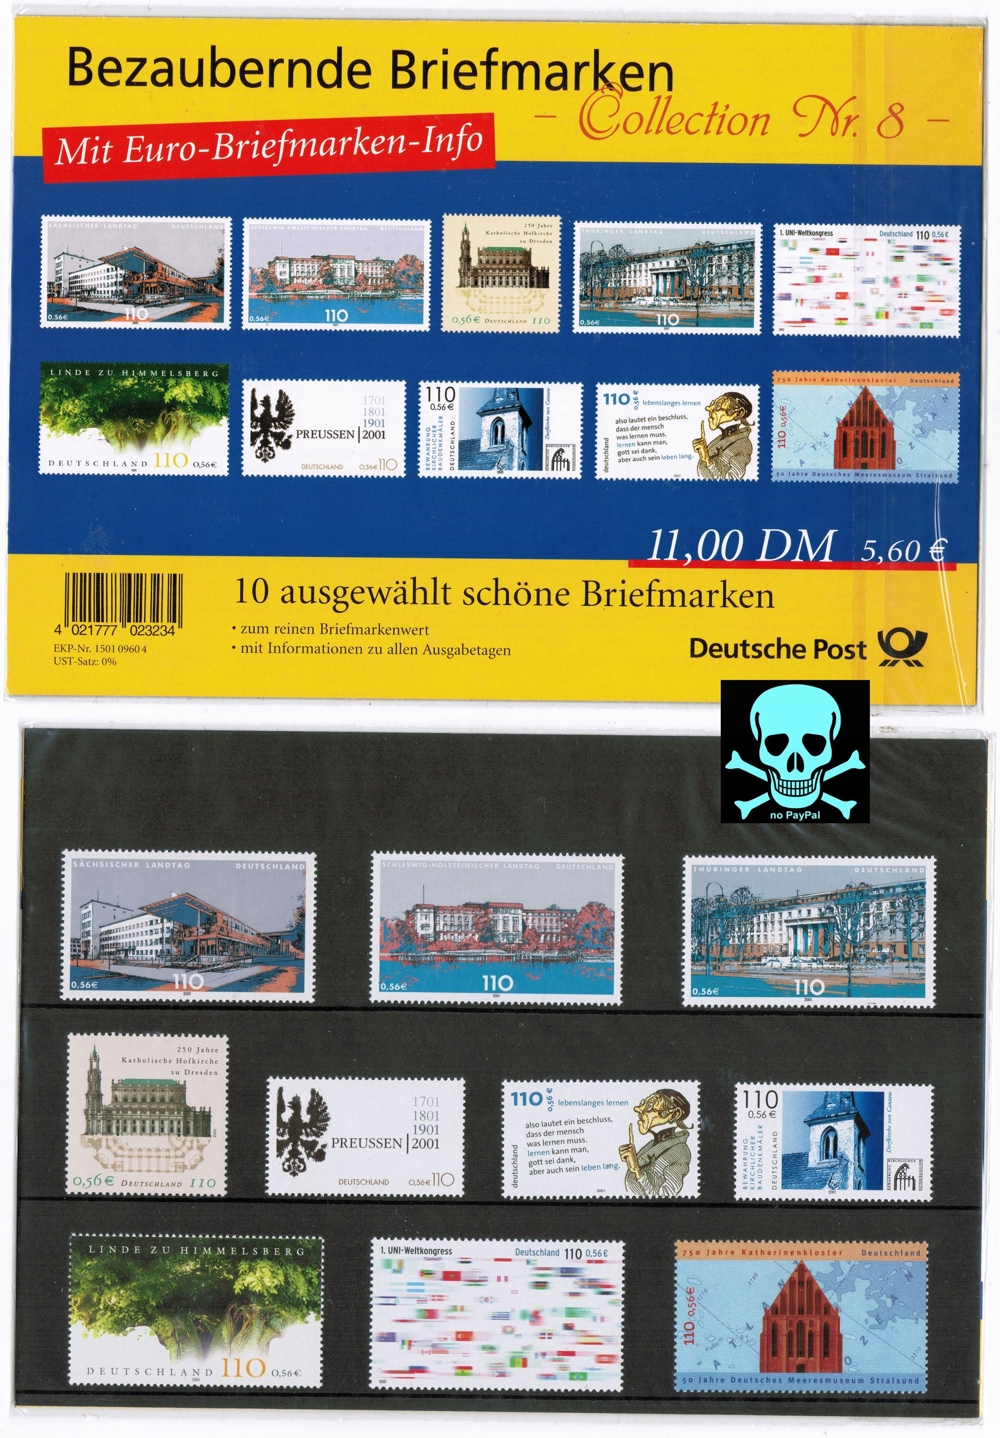 Bezaubernde Briefmarken" Collection Nr. 8, Doppelwährung,